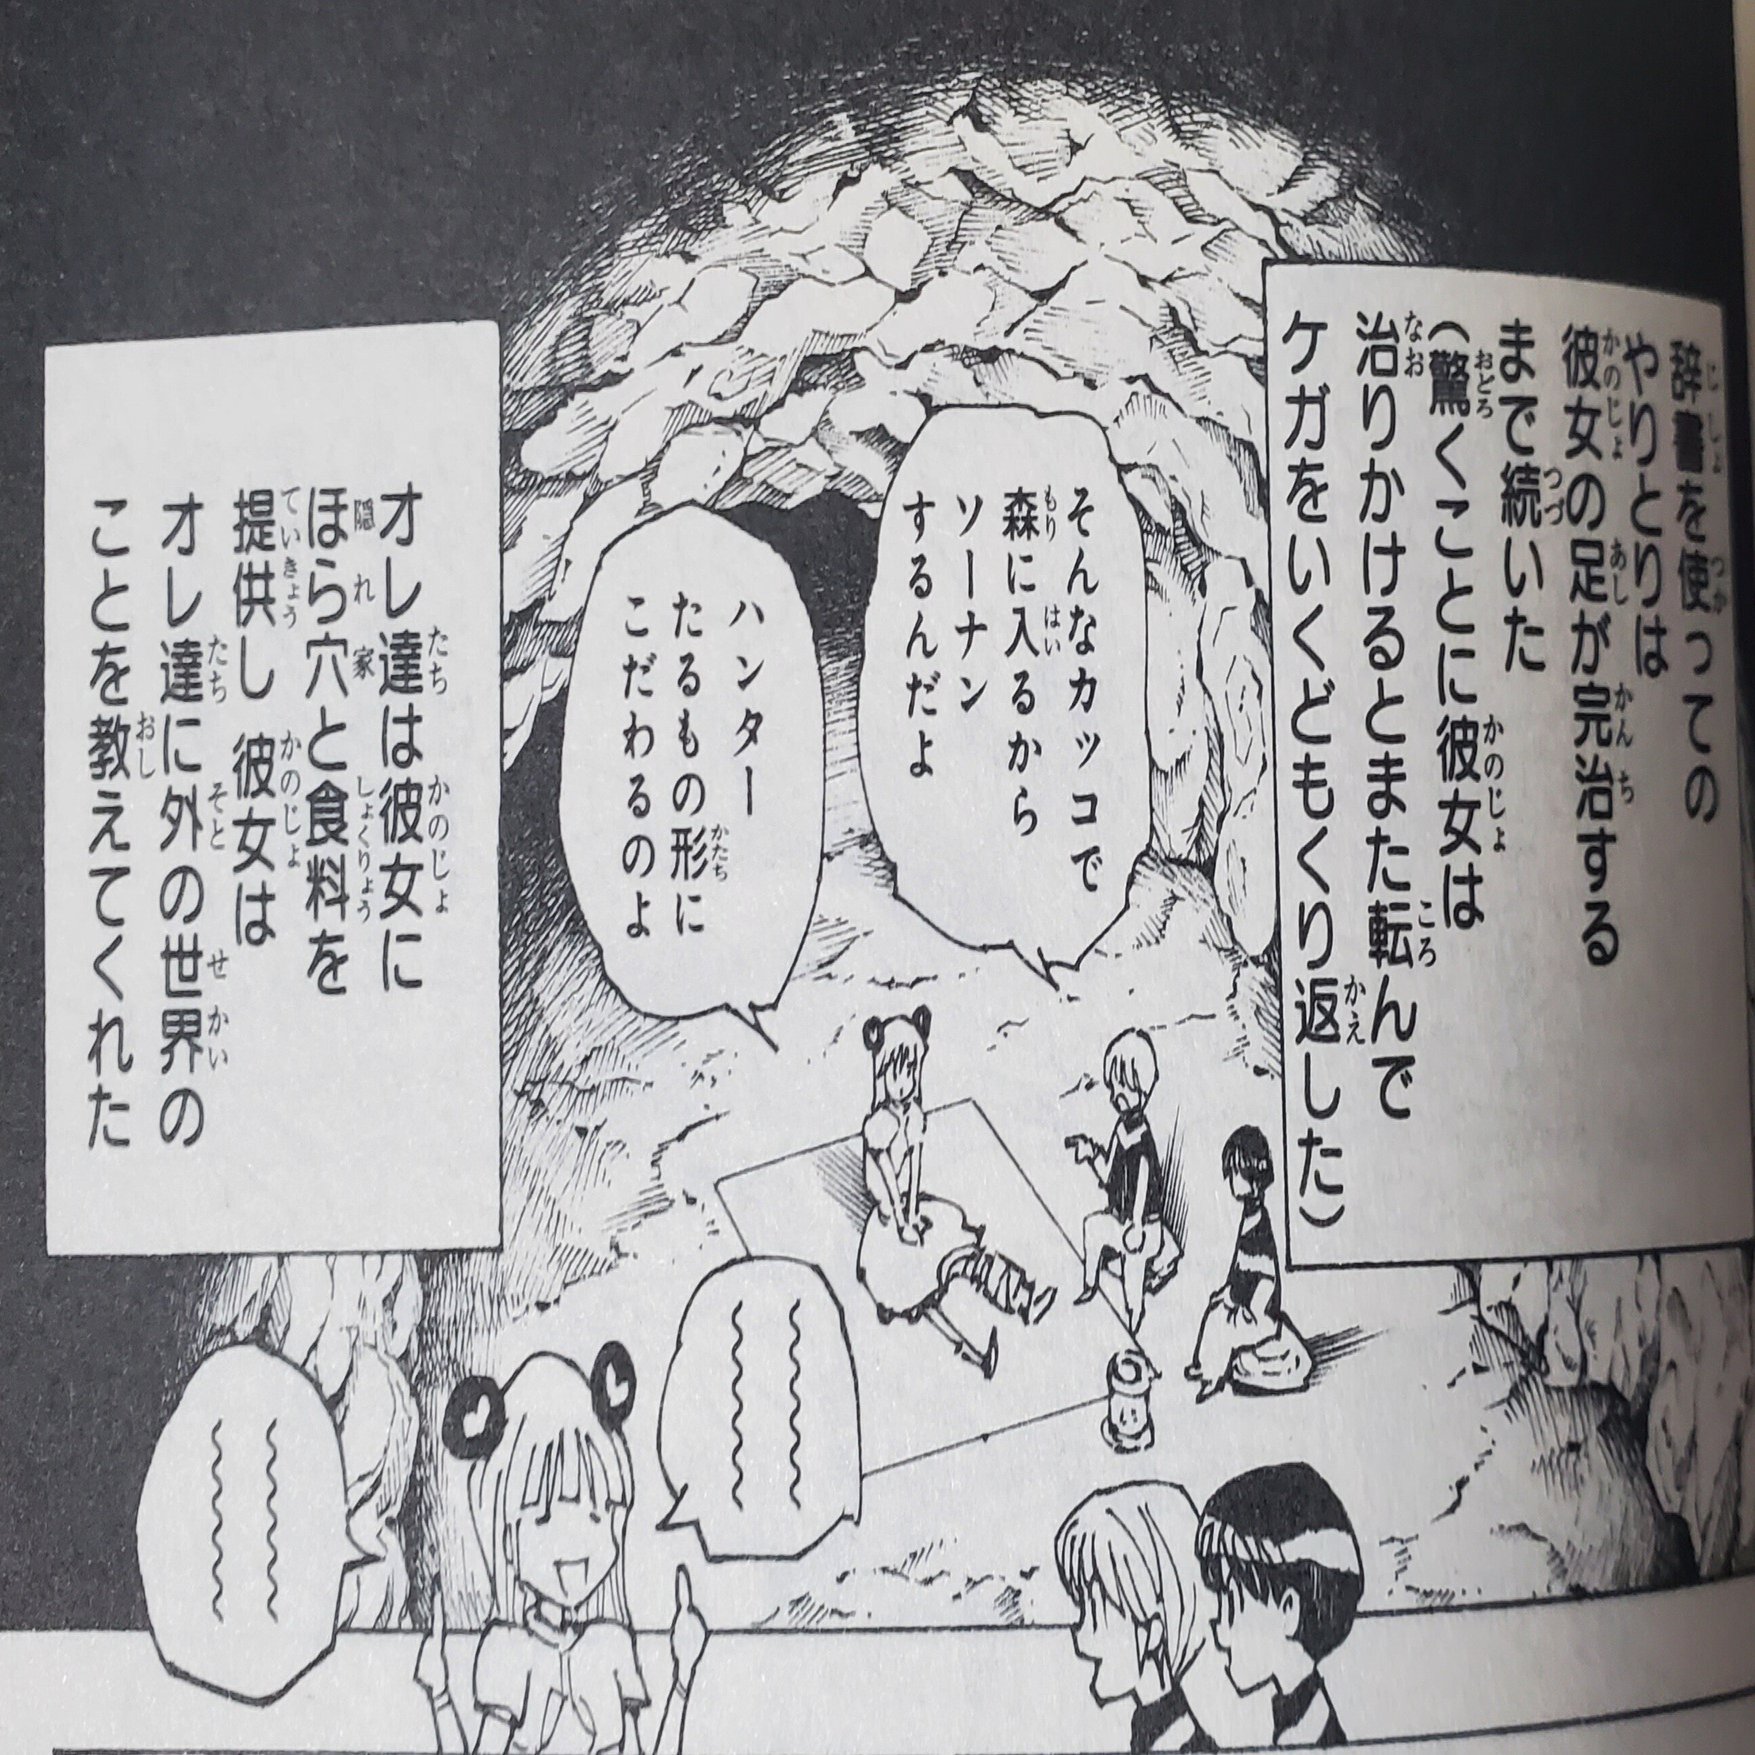 22年ジャンプ51号感想 暗号学園のいろは 新連載号 Wj51 空目ハルヒコ Haruhiko Utsume Note